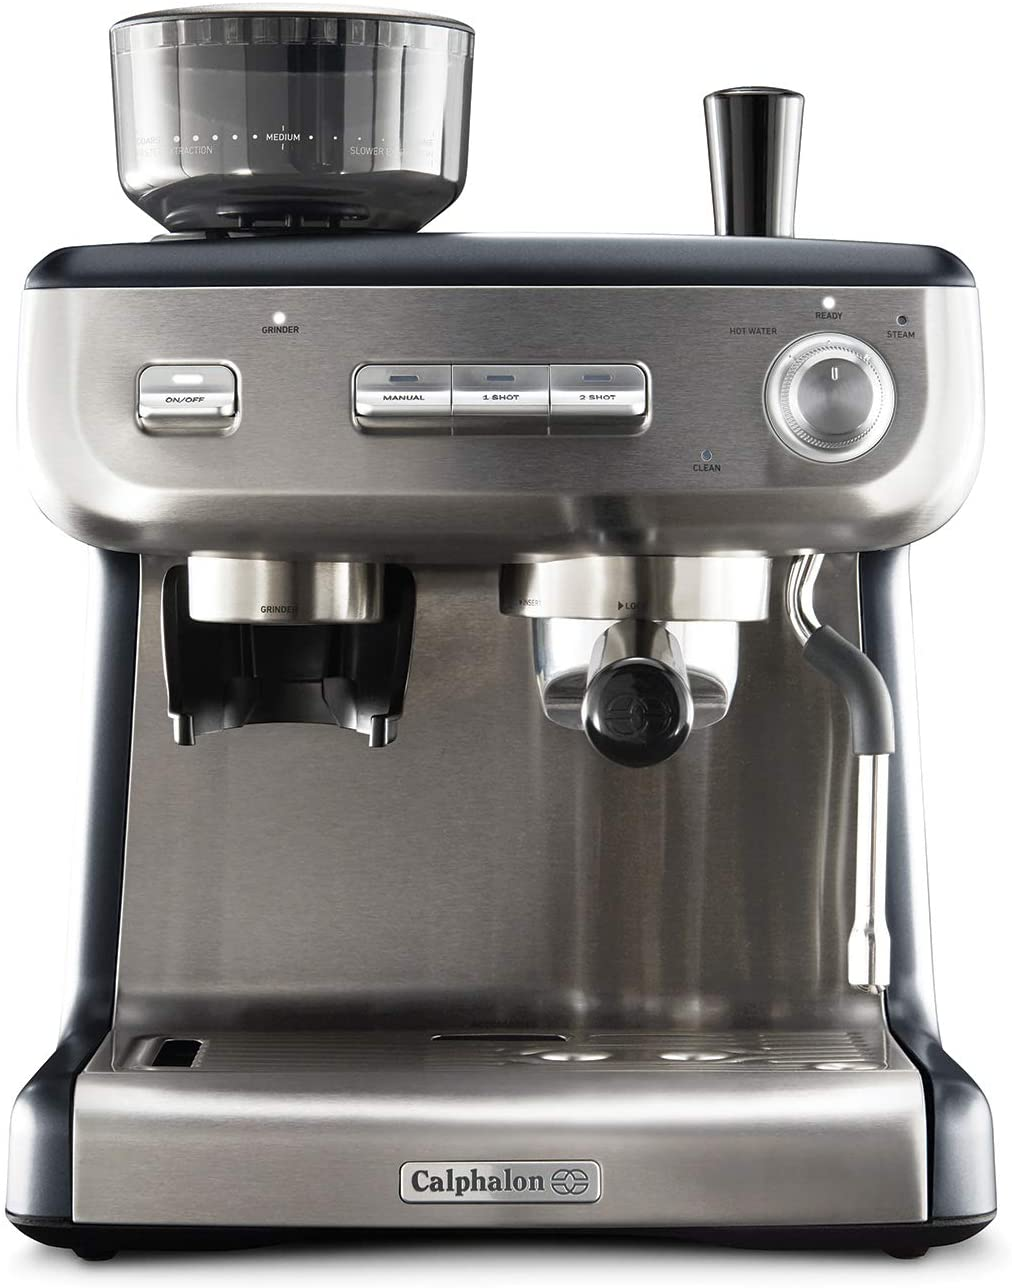 Calphalon Temp iQ Espresso Machine $419 @Amazon